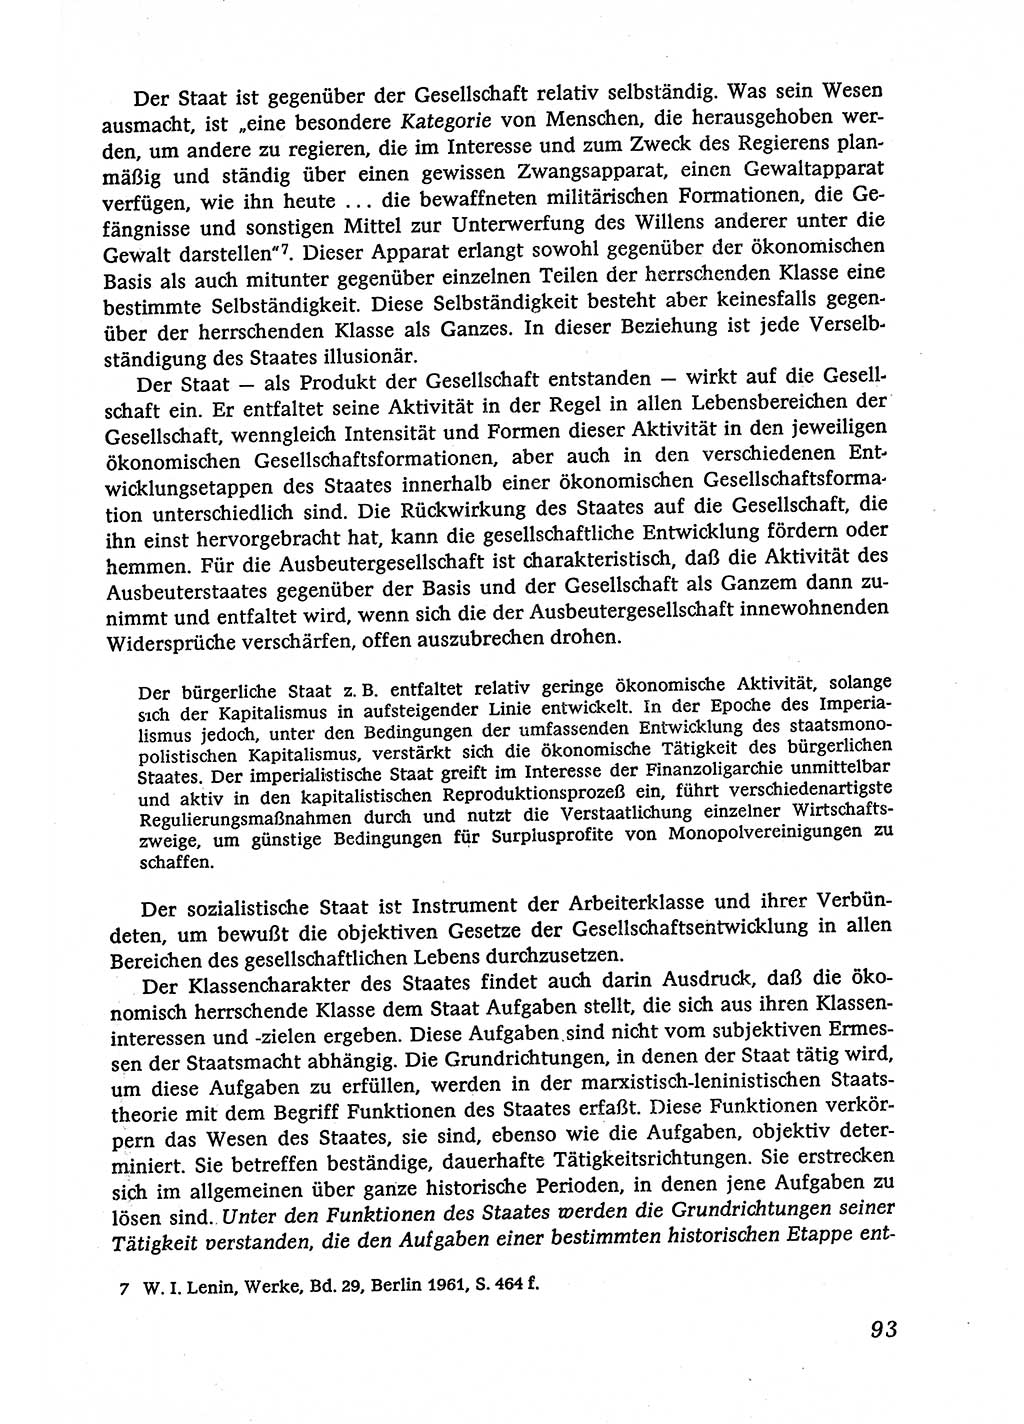 Marxistisch-leninistische (ML) Staats- und Rechtstheorie [Deutsche Demokratische Republik (DDR)], Lehrbuch 1980, Seite 93 (ML St.-R.-Th. DDR Lb. 1980, S. 93)